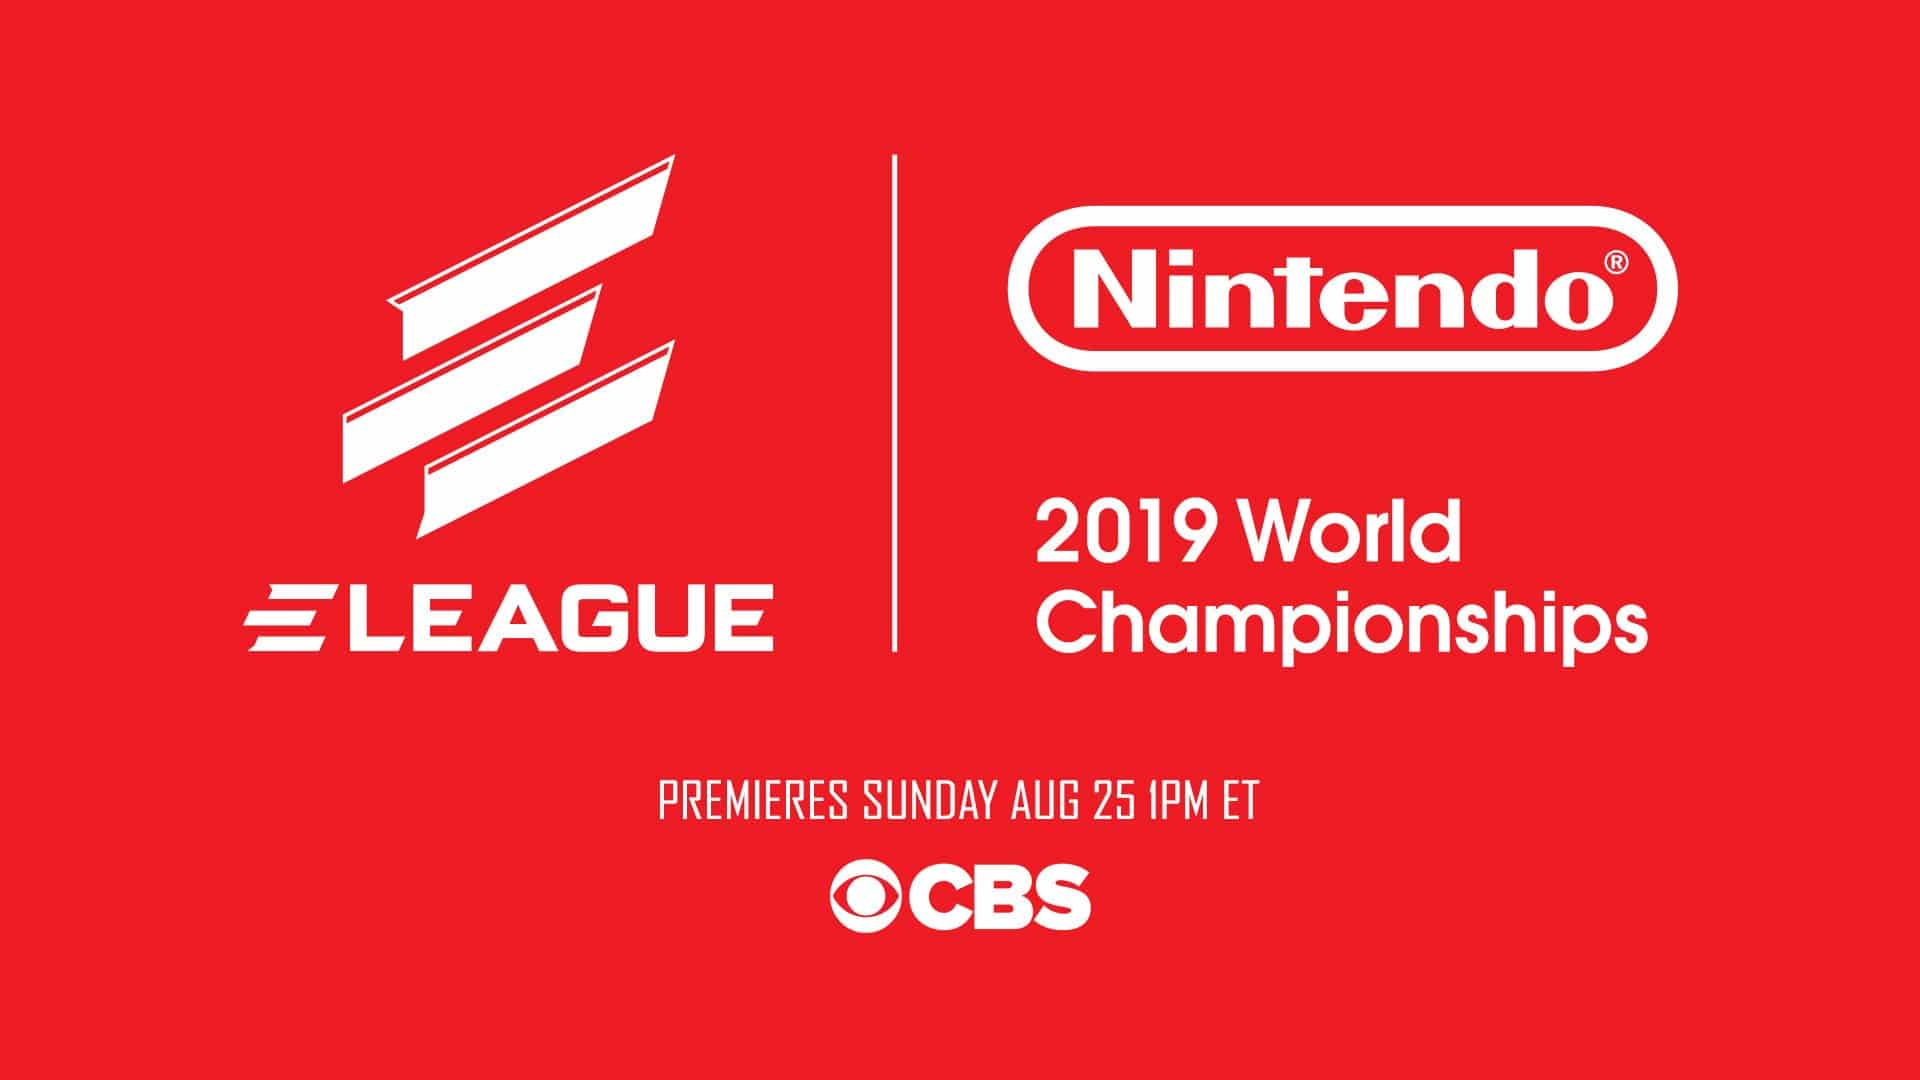 ELEAGUE y Nintendo se unen de nuevo en los Nintendo 2019 World Championships